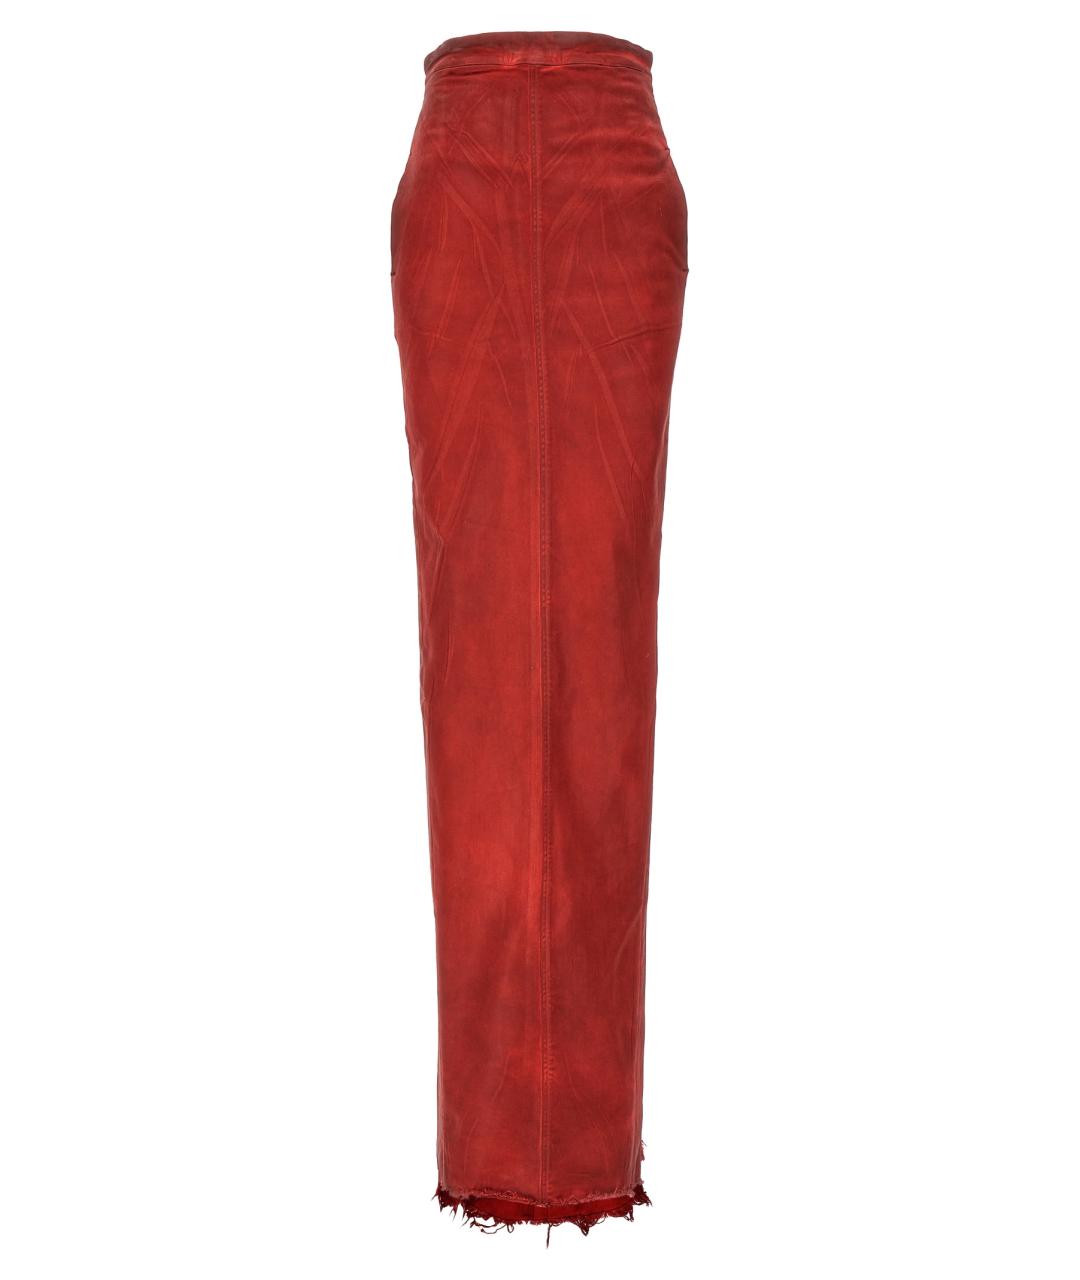 RICK OWENS Красная хлопковая юбка макси, фото 1